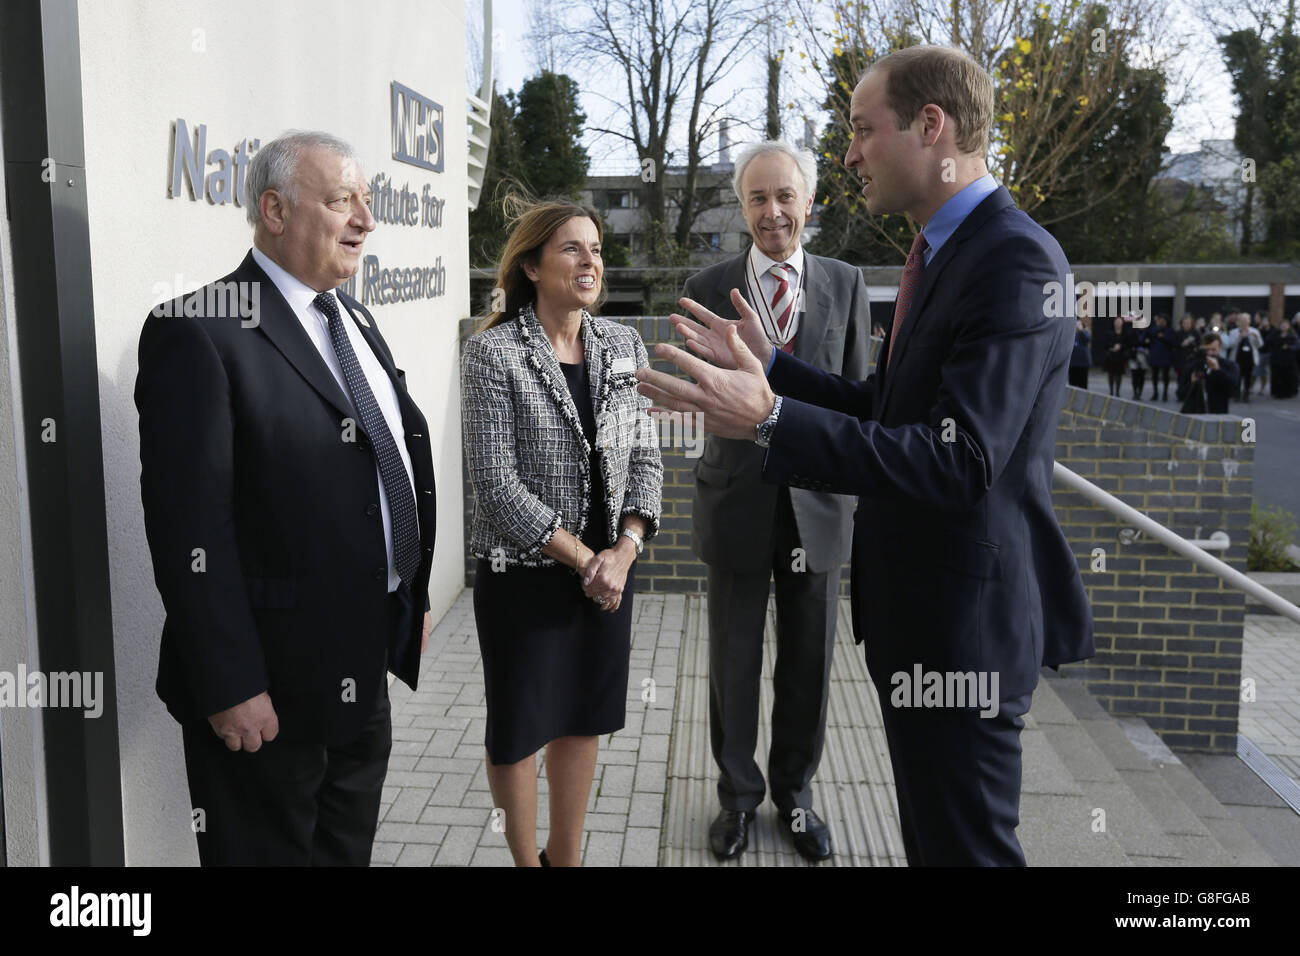 Le duc de Cambridge (à droite) rencontre le directeur médical, le professeur Martin Gore (à gauche), le chef de la direction, allié Palmer, et le major Christopher Goodwin lorsqu'il se rend à l'hôpital Royal Marsden NHS Foundation Trust de Sutton, dans le sud-ouest de Londres. Banque D'Images